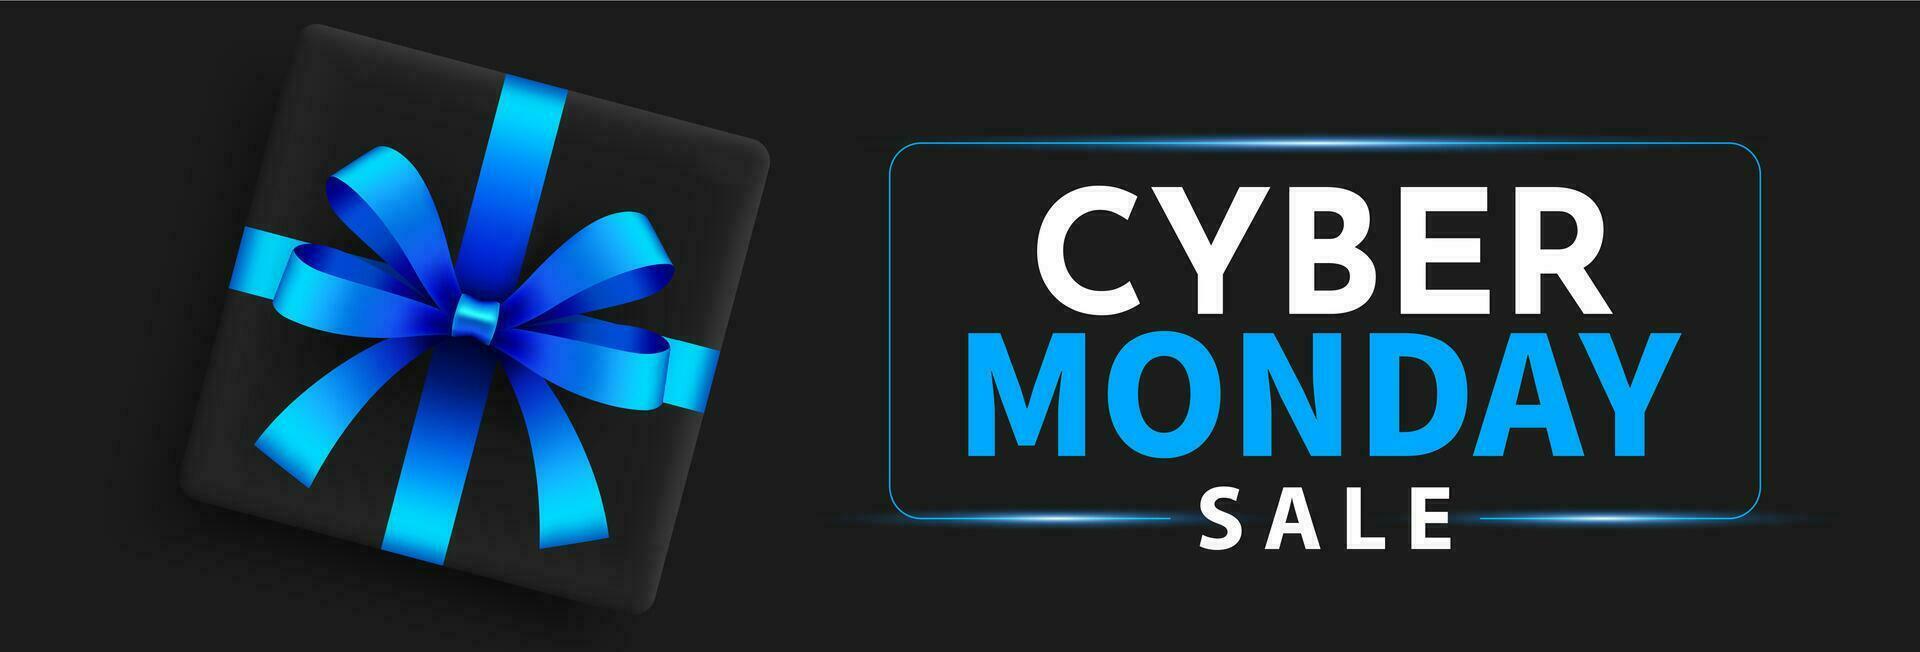 cyber måndag försäljning baner mall. cyber måndag typografi text design för försäljning erbjudande och rabatt kampanj. vektor illustration